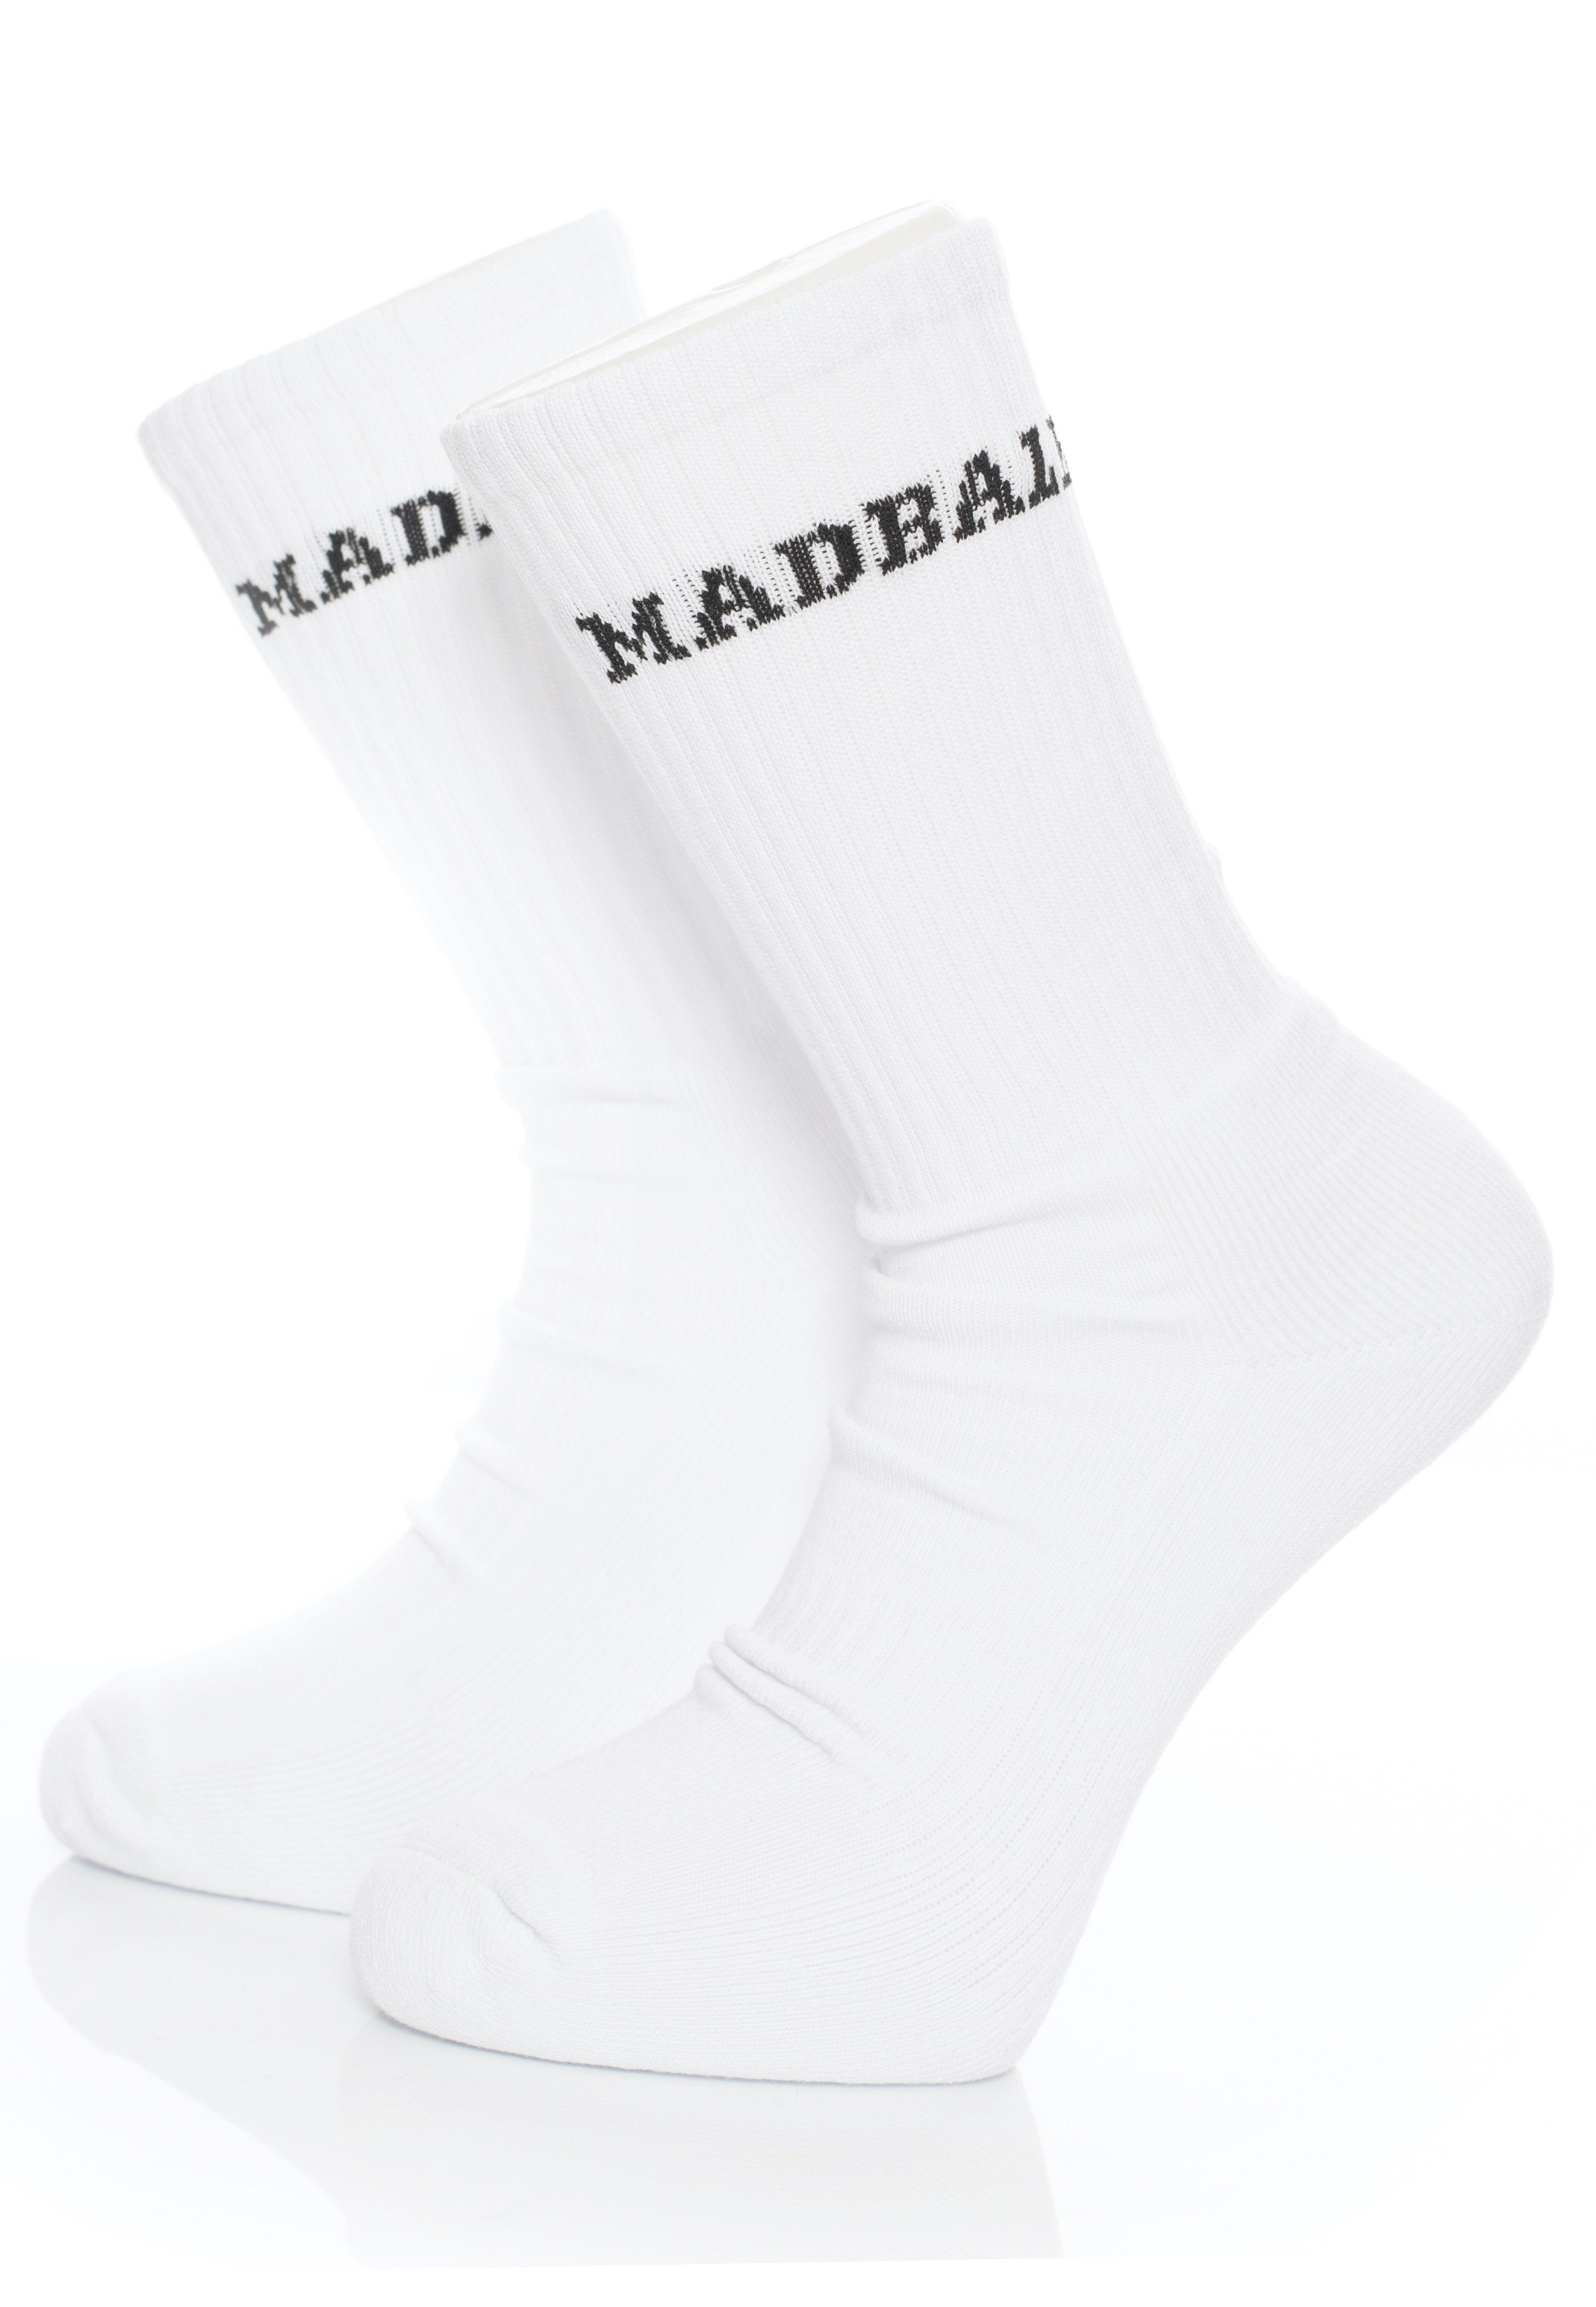 Madball - Logo - Socks